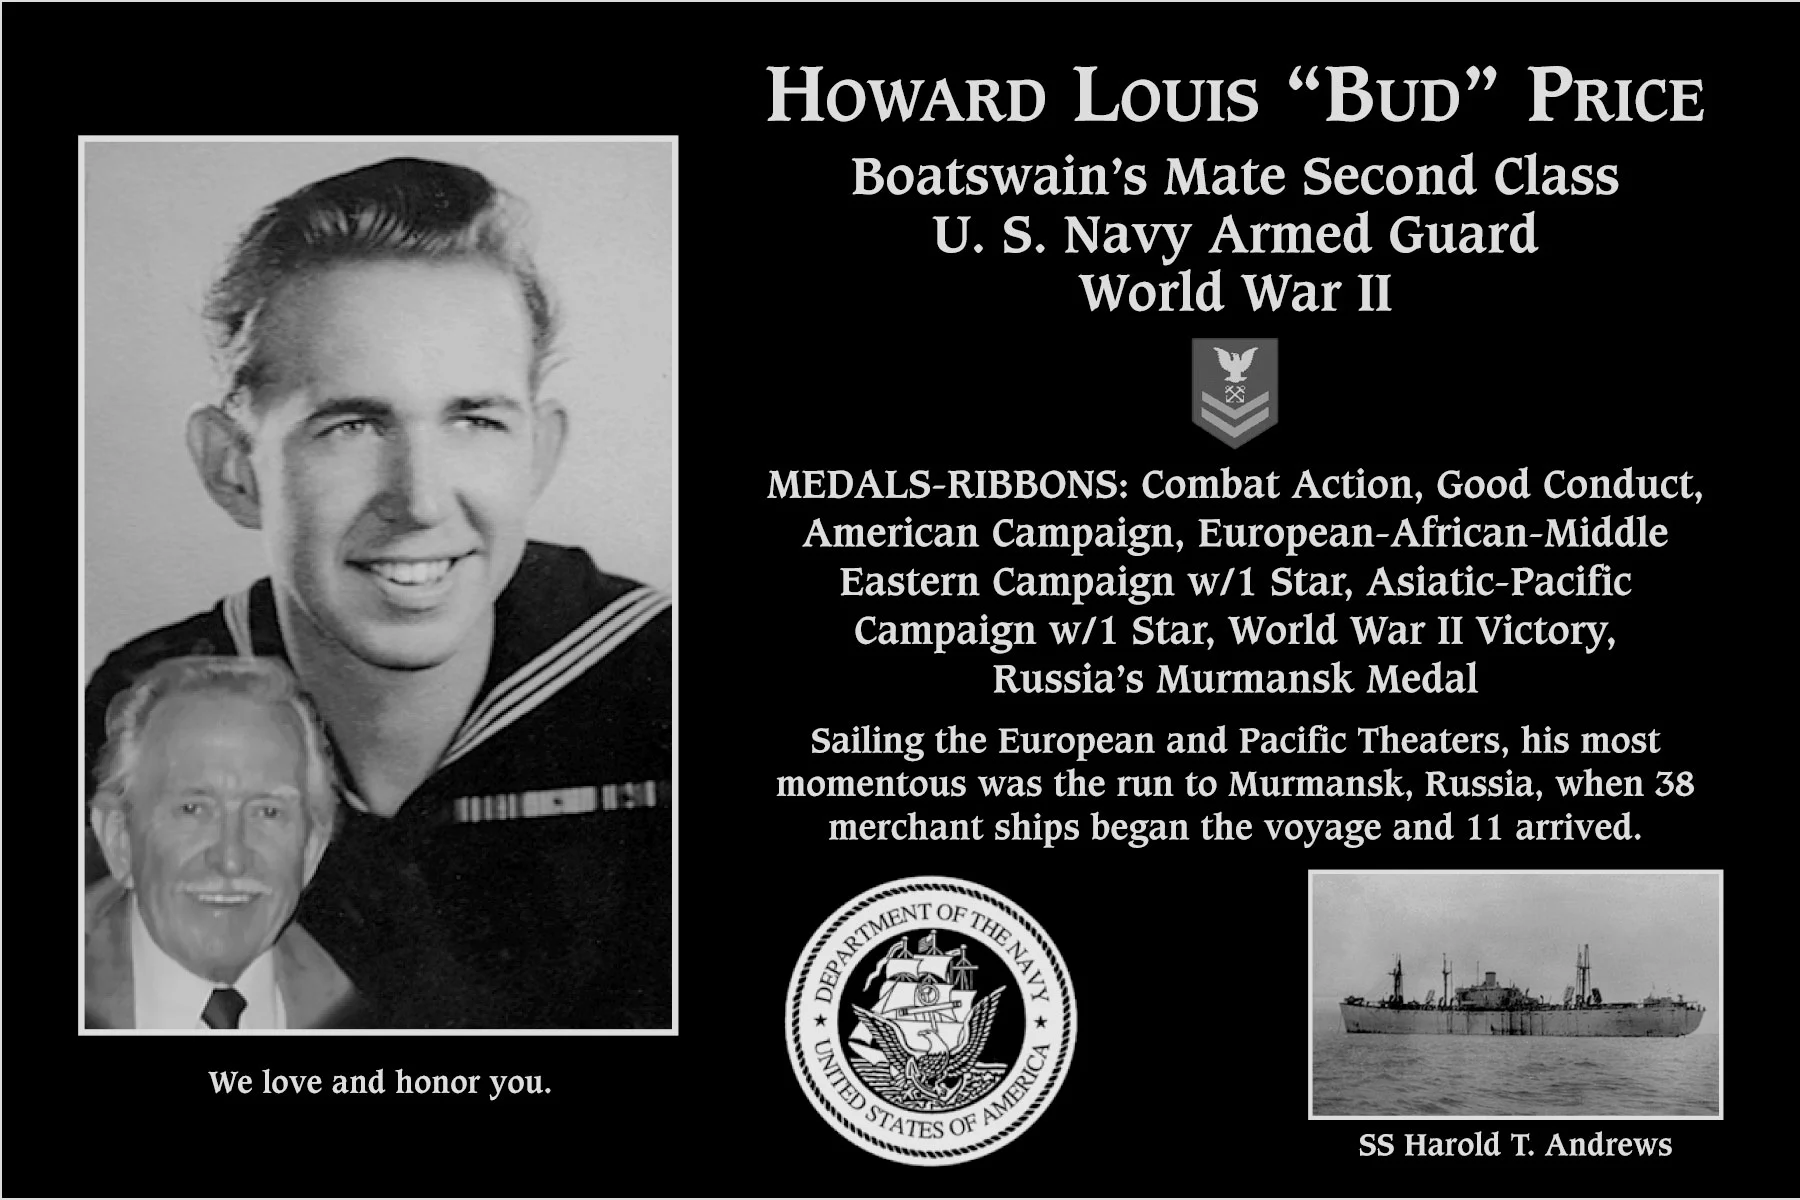 Howard Louis “Bud” Price